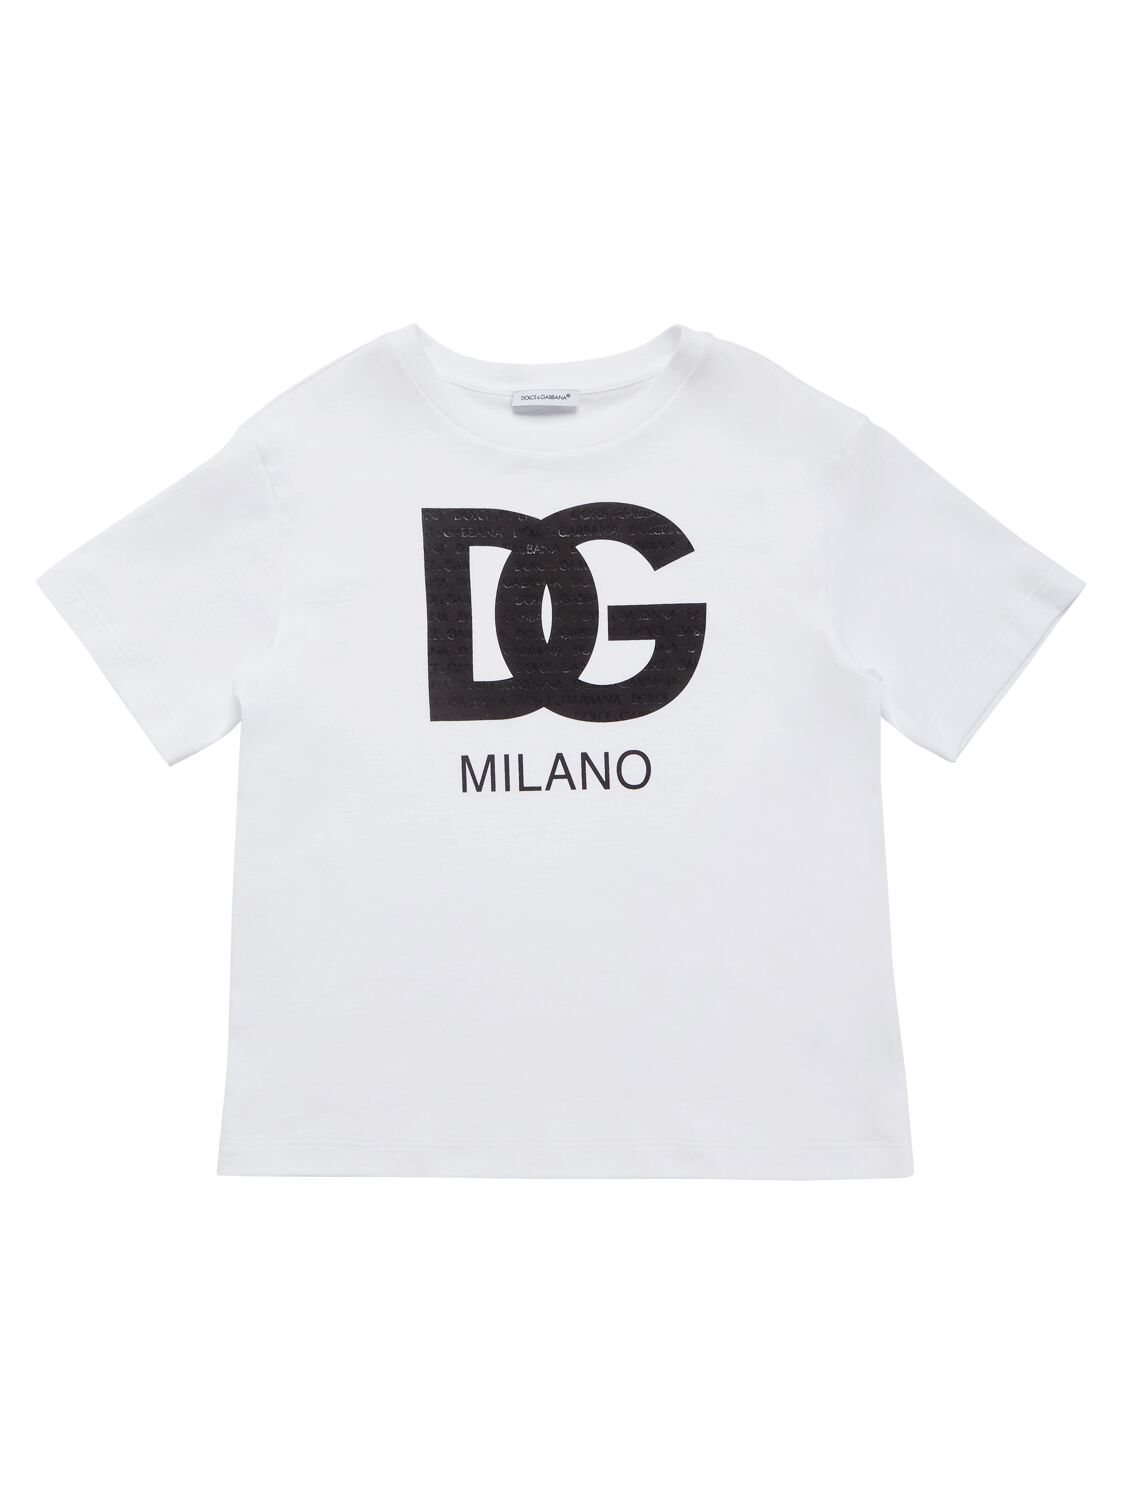 Dolce & Gabbana Kids' Dg Cotton Jersey T-shirt In Weiss